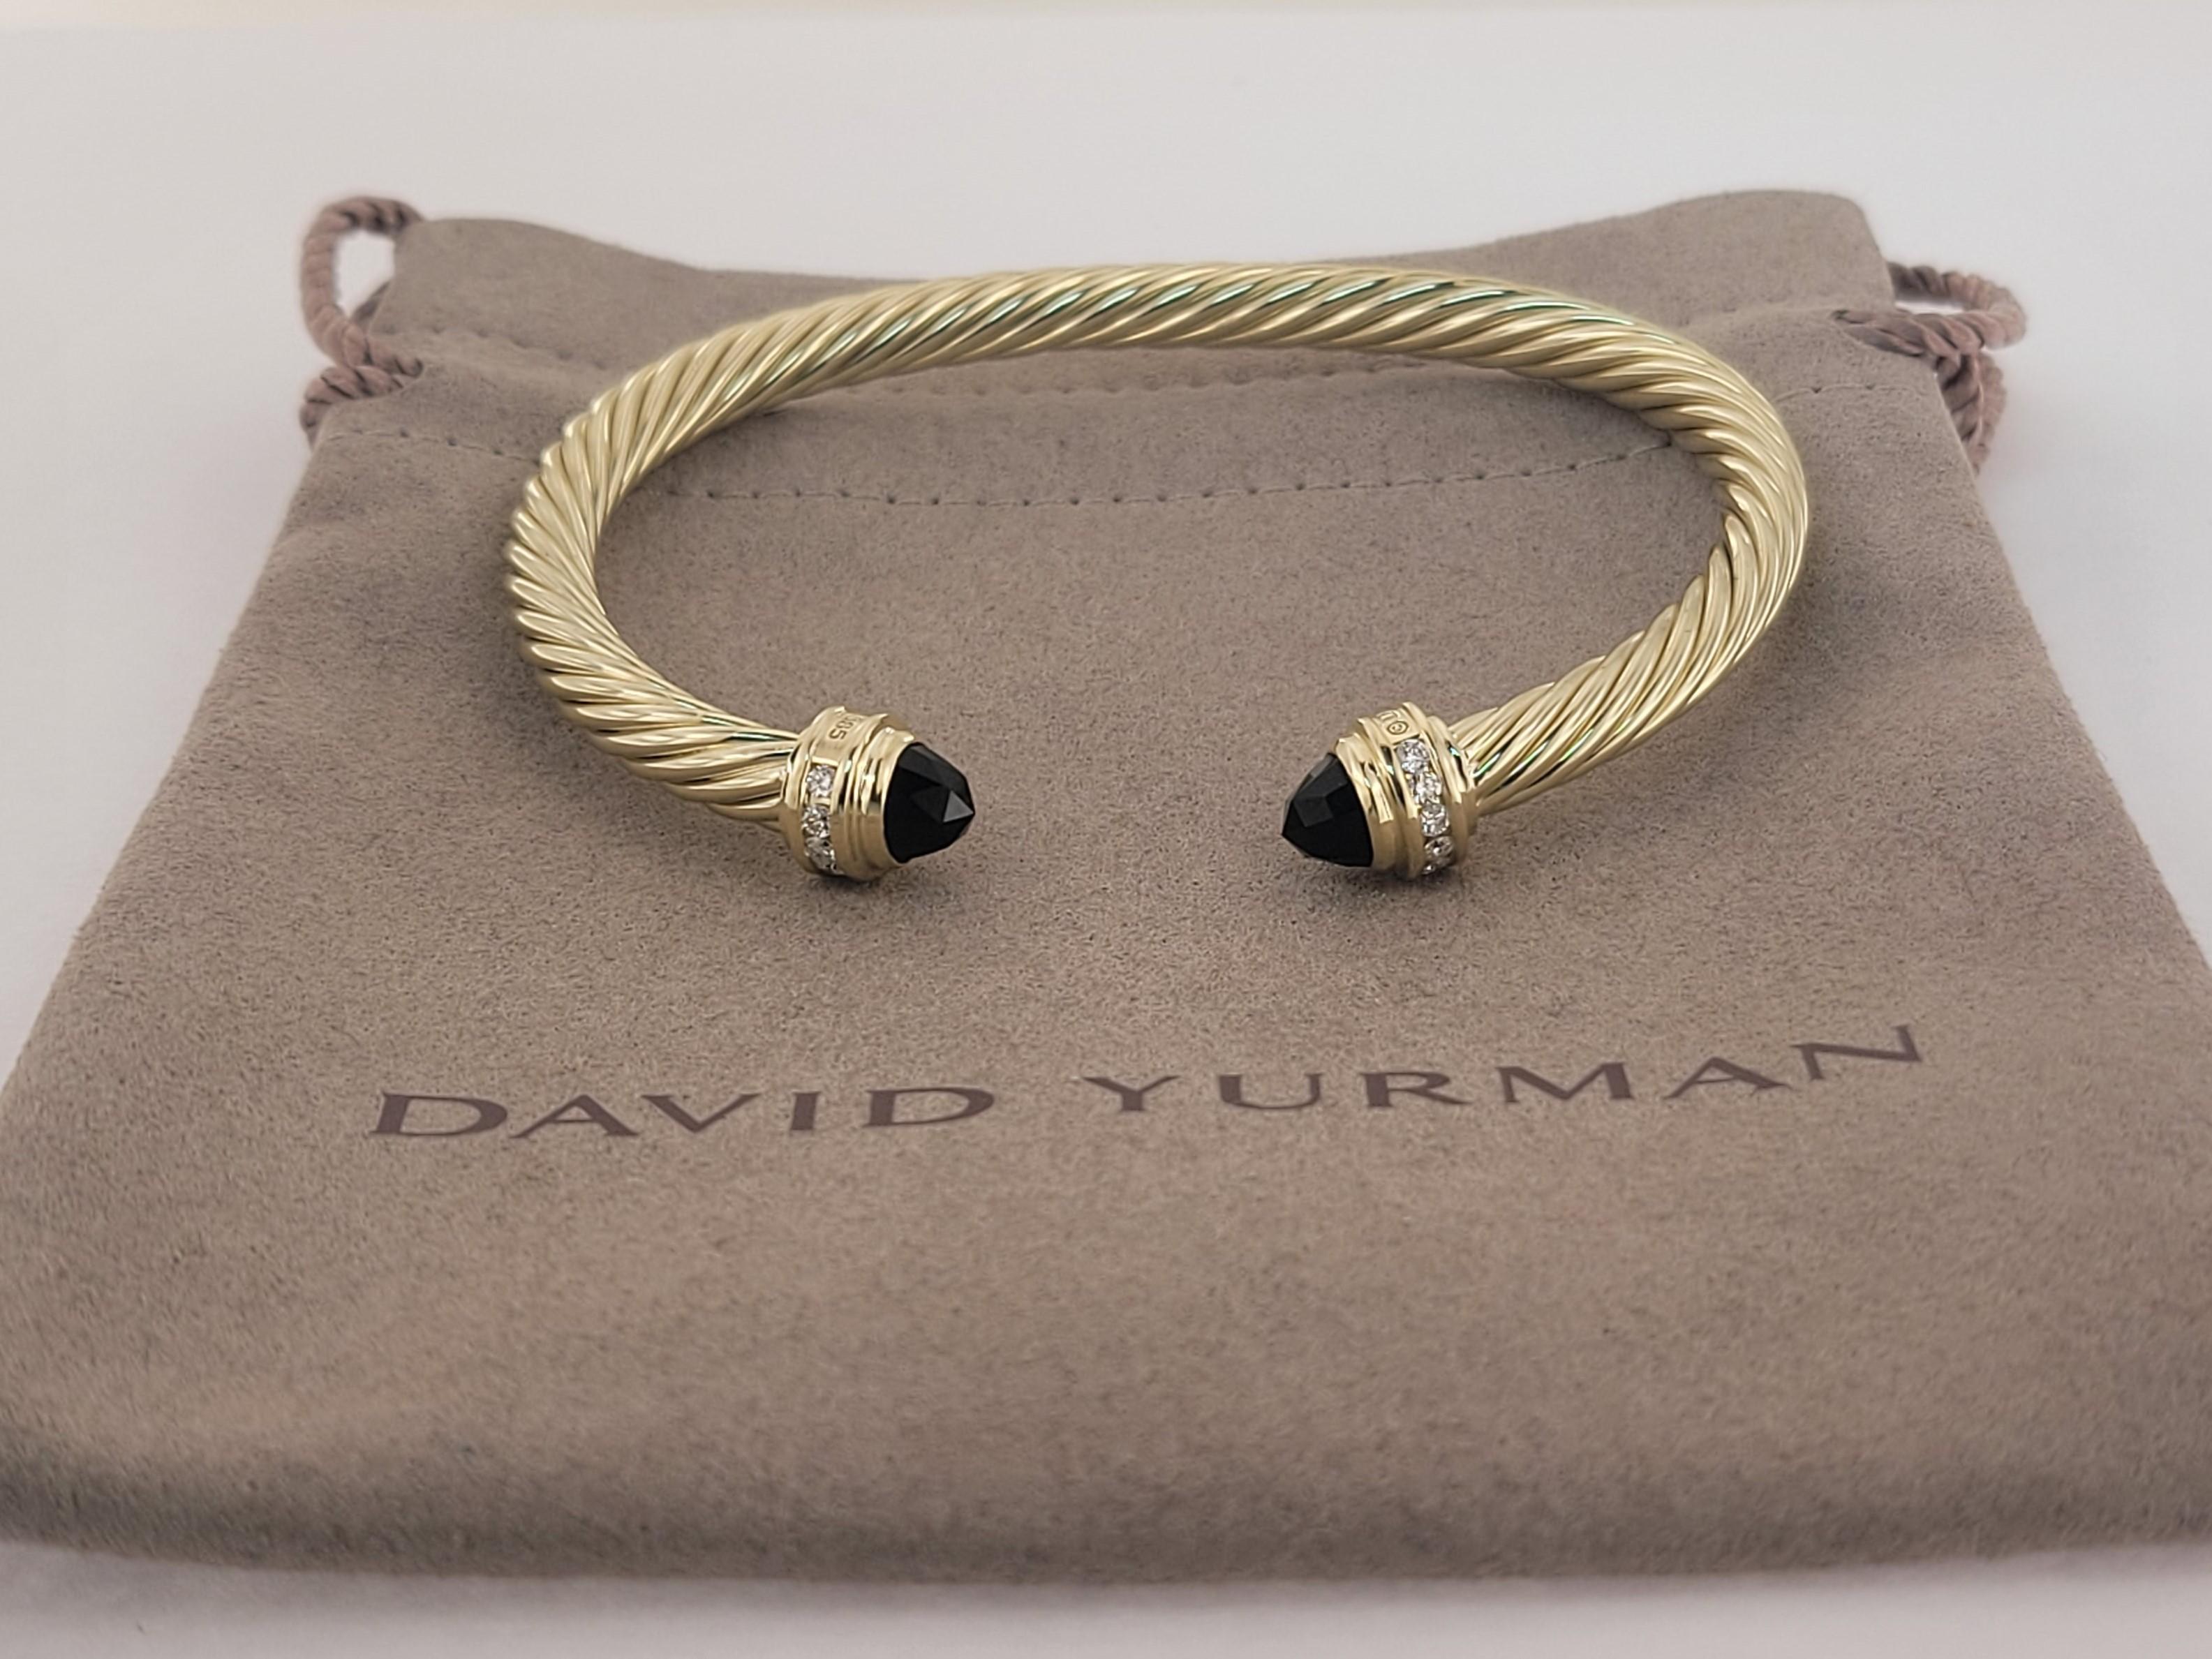 Marke David Yurman
Größe Medium
Geschlecht Frauen
Zustand nie getragen
14K Gelbgold
Schwarzer Onyx 
Pave-Diamant 0,41 Karat Gesamtgewicht
Breite 5mm
Gewicht 15.5gr